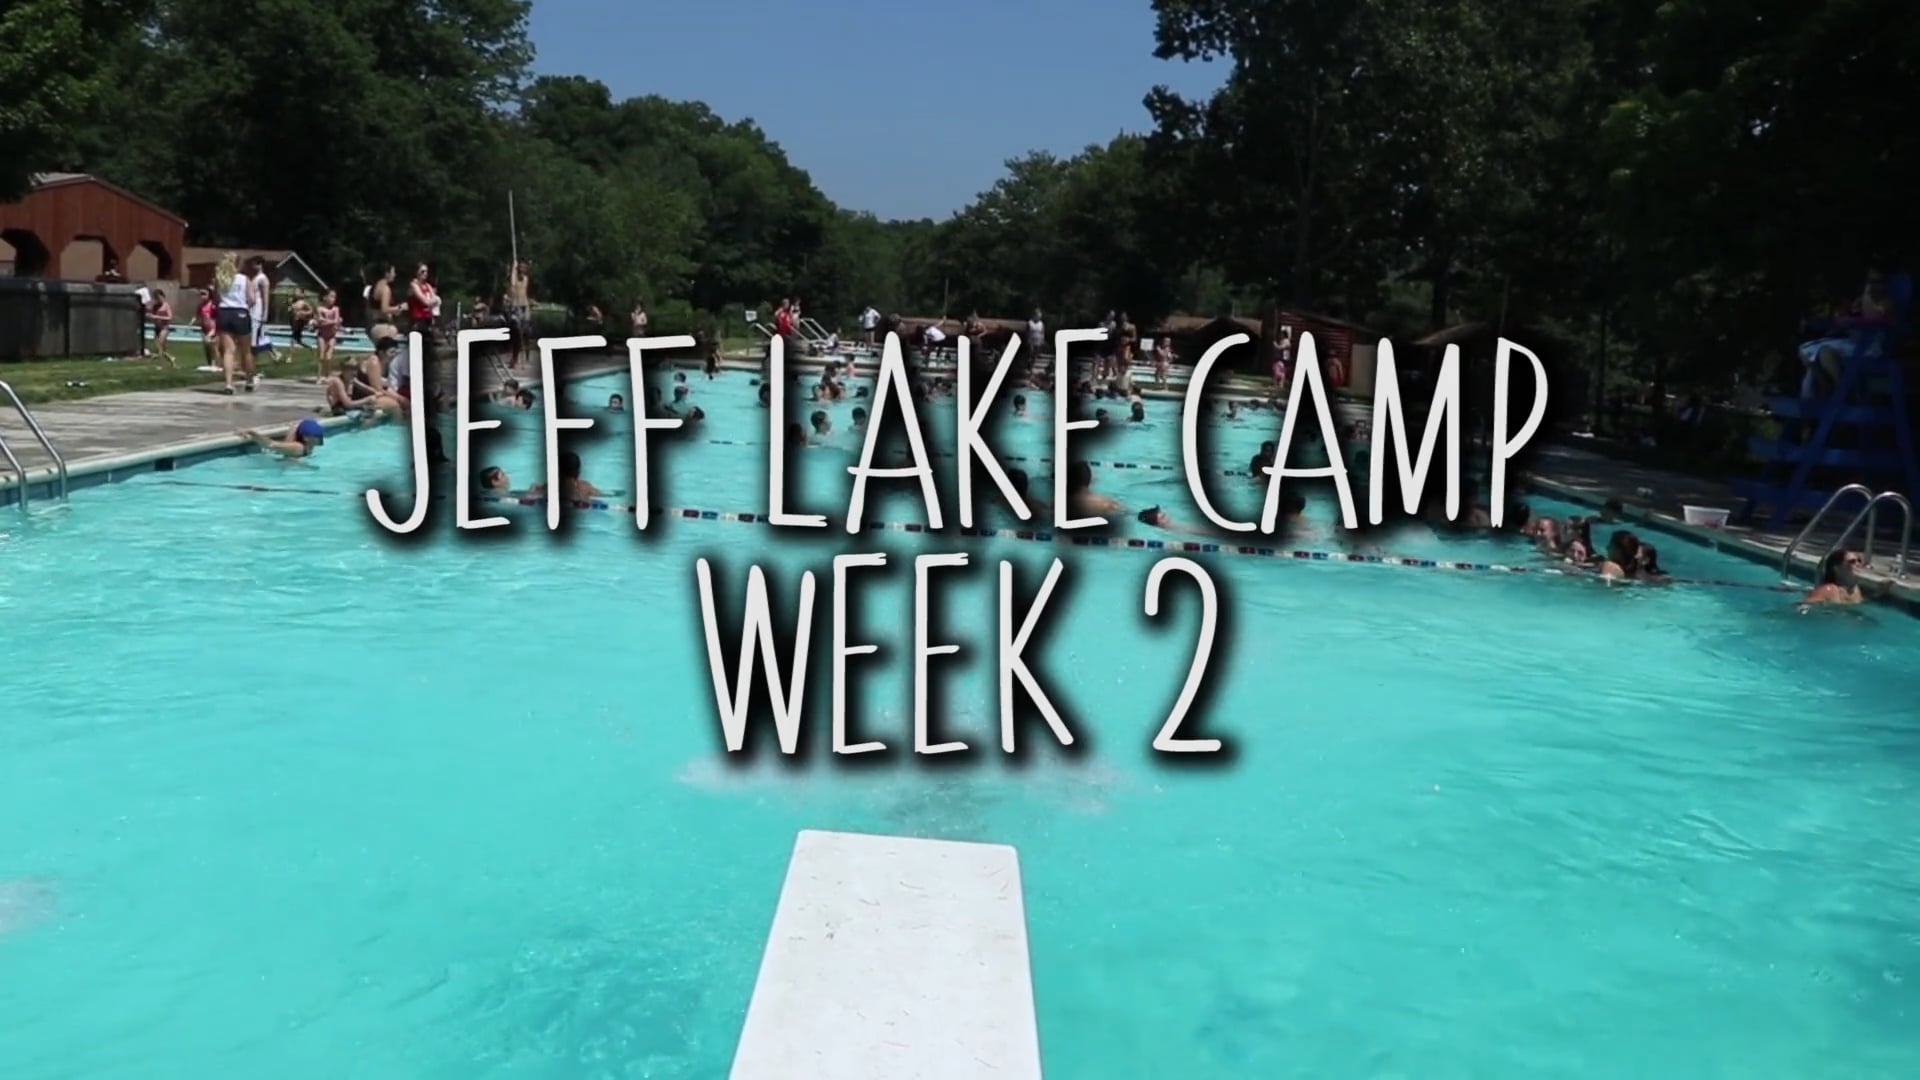 Jeff Lake Camp: Week 2 Highlights